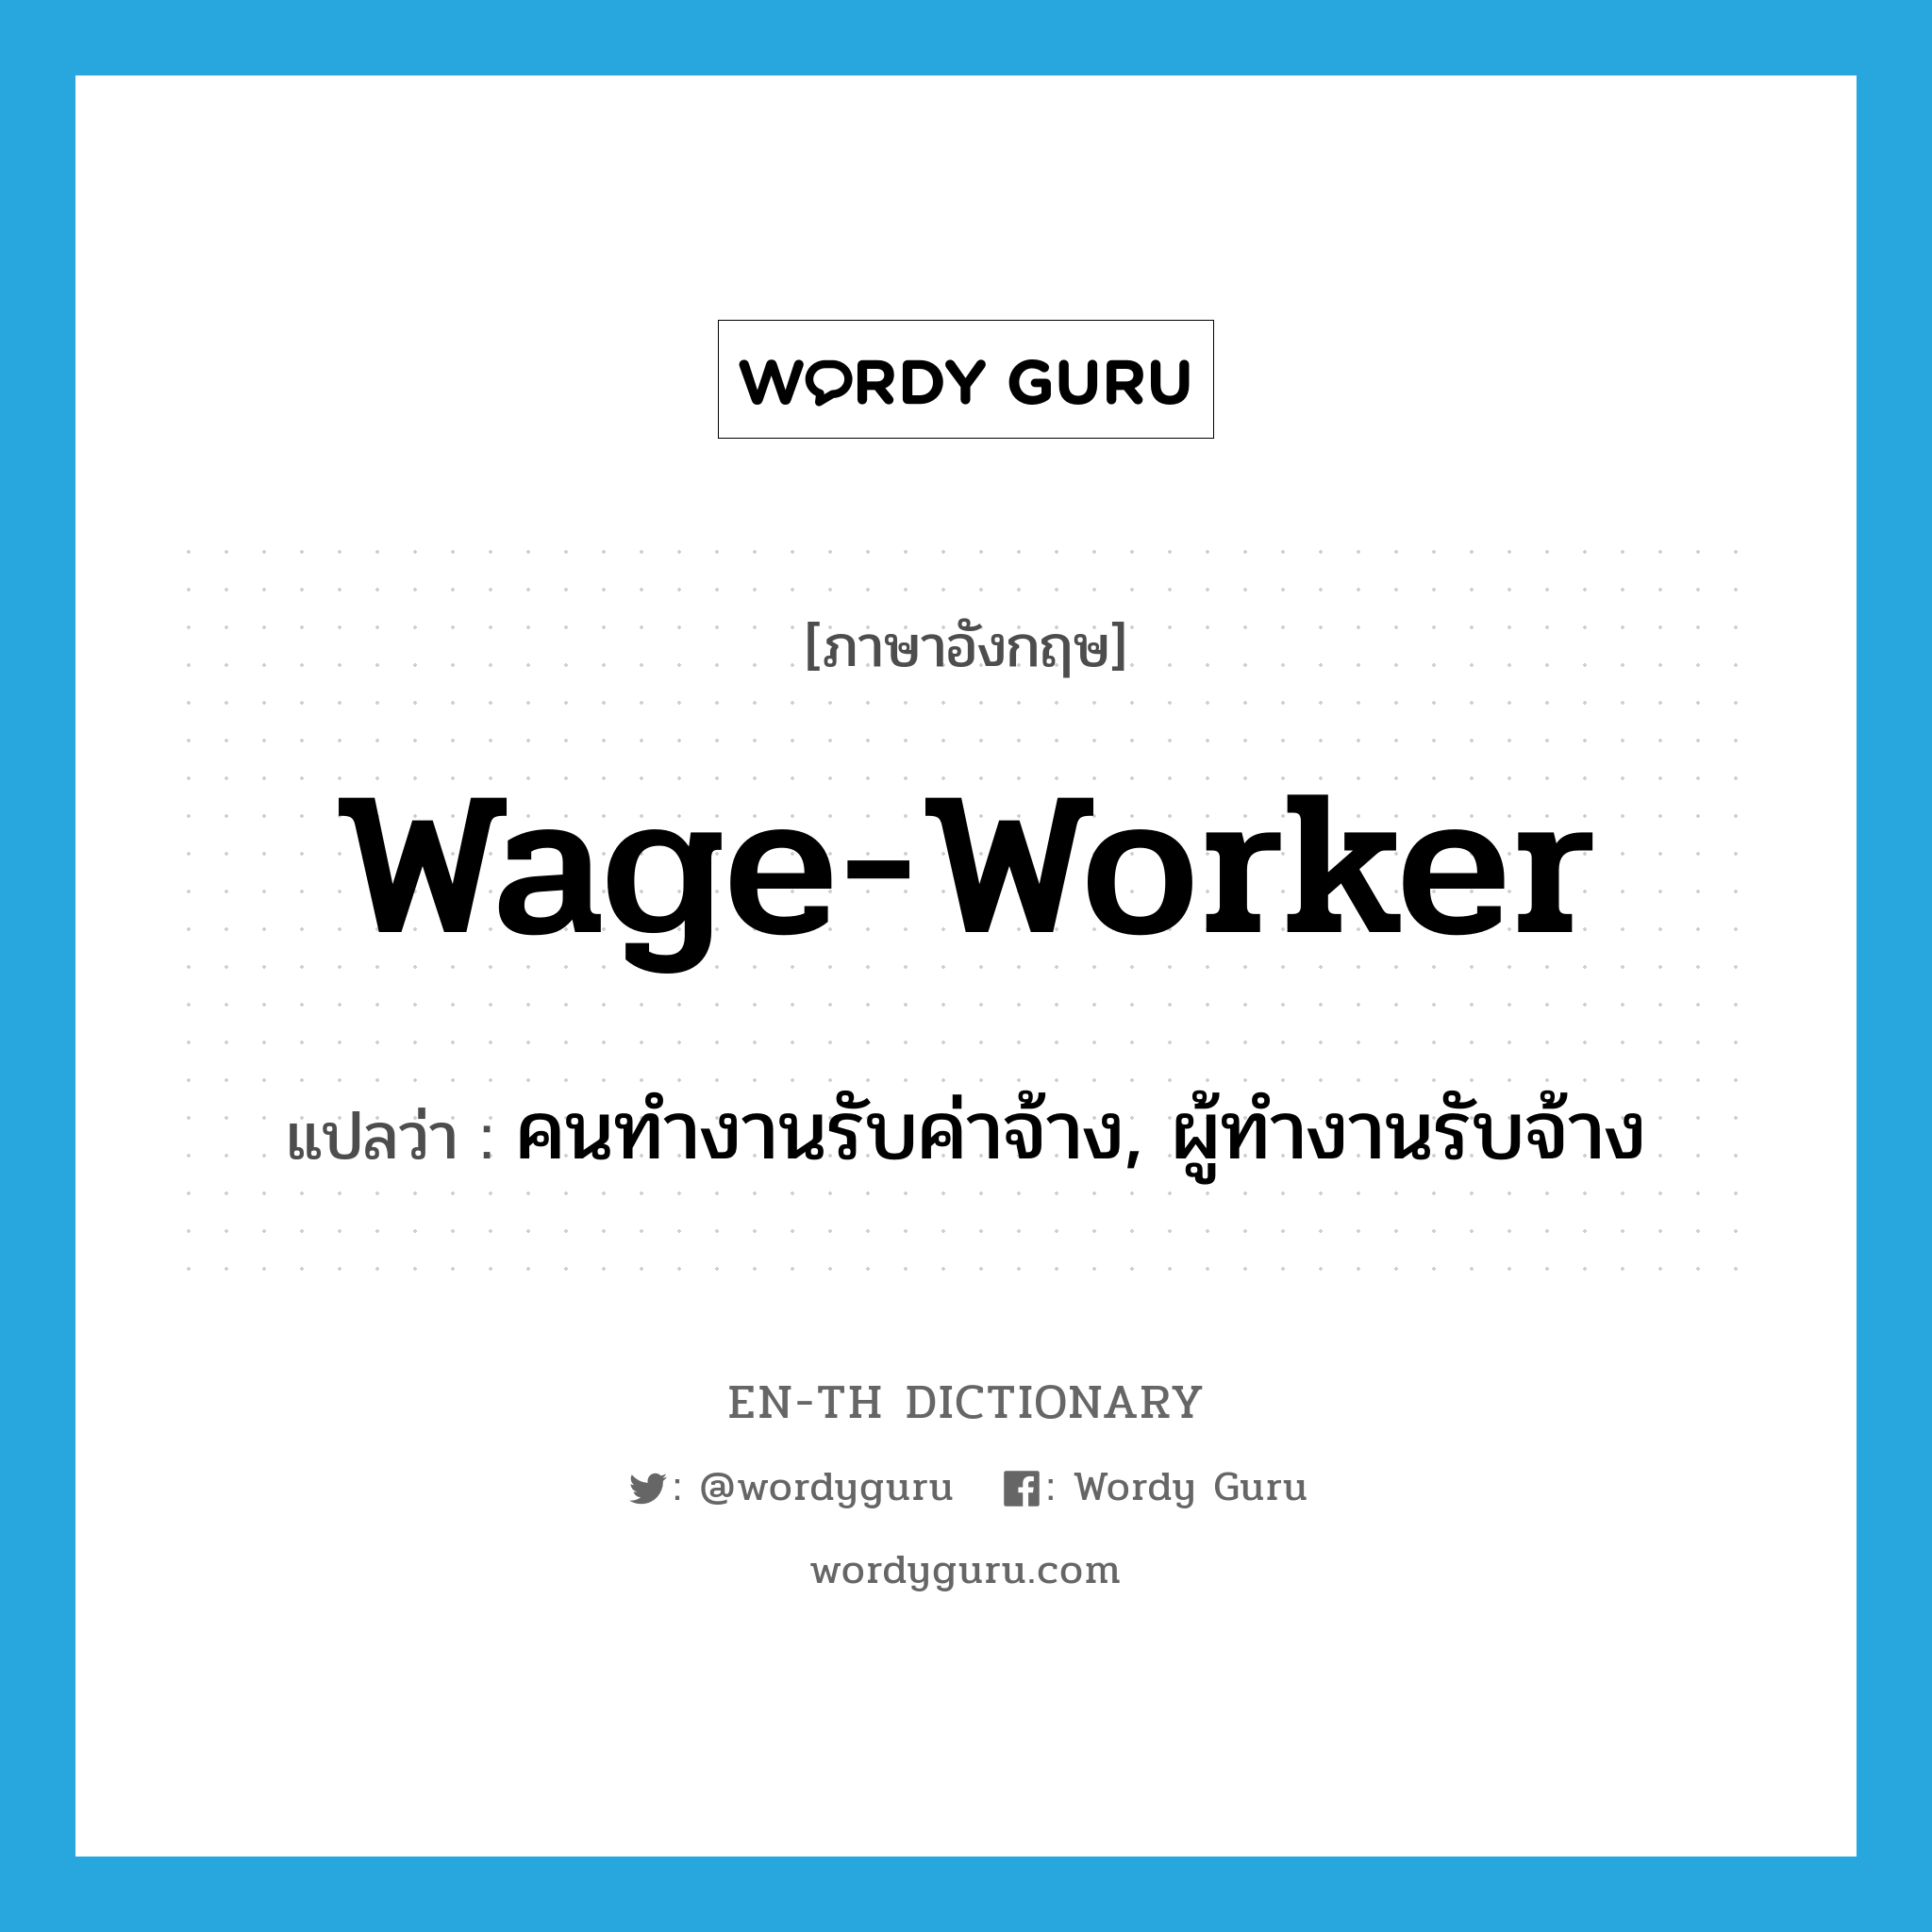 wage-worker แปลว่า?, คำศัพท์ภาษาอังกฤษ wage-worker แปลว่า คนทำงานรับค่าจ้าง, ผู้ทำงานรับจ้าง ประเภท N หมวด N